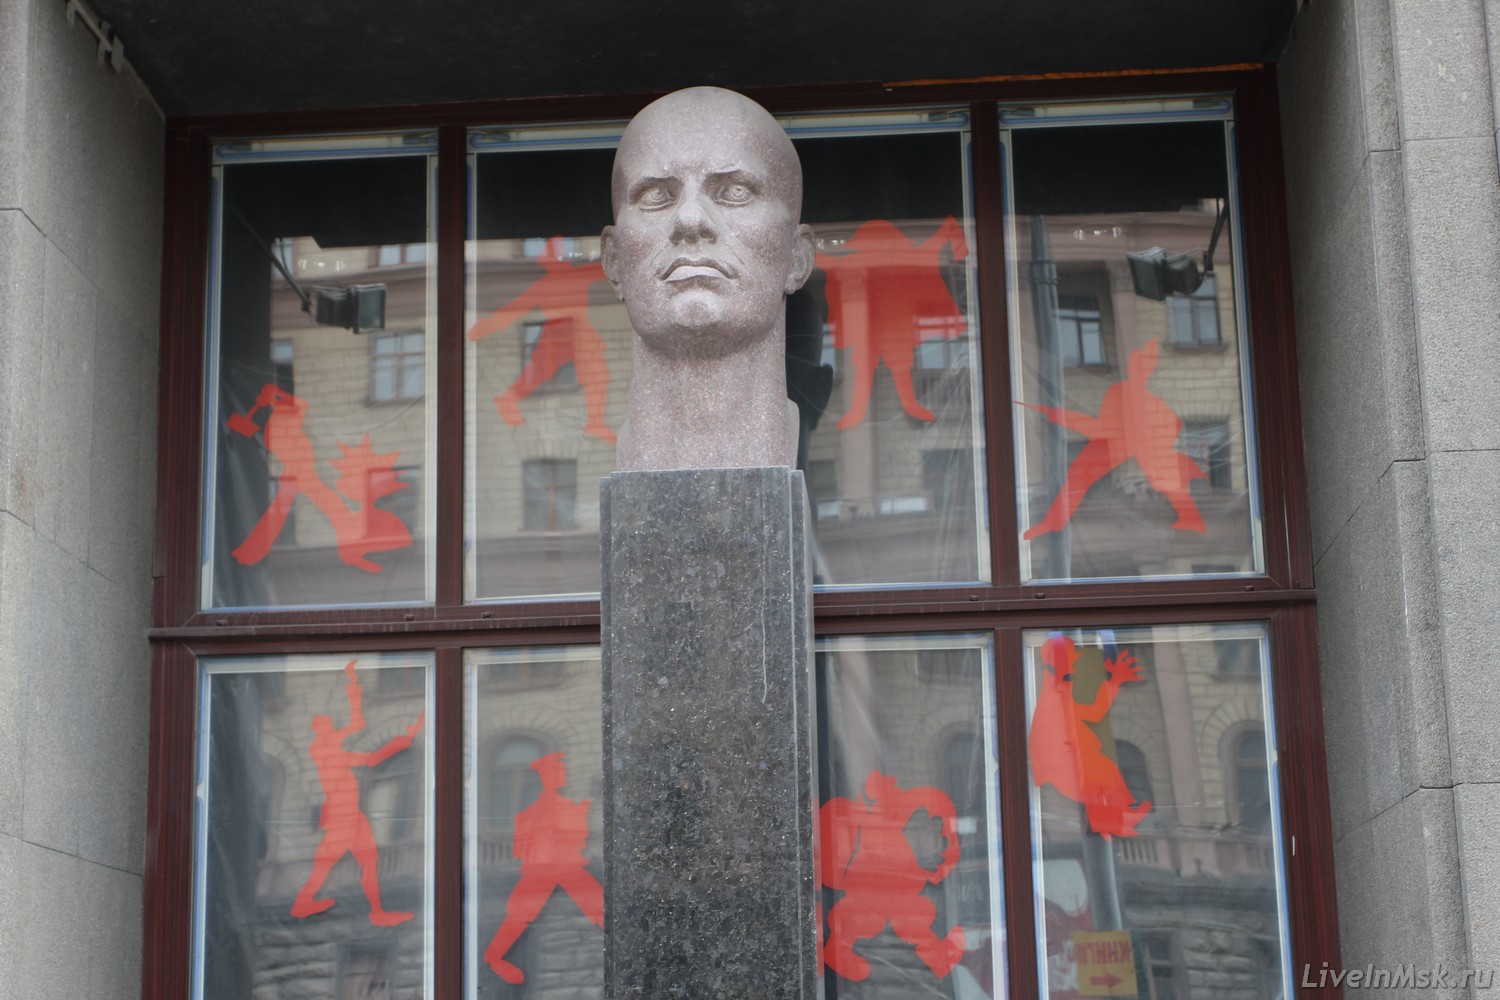 Памятник Маяковскому у входа в музей, фото 2015 года